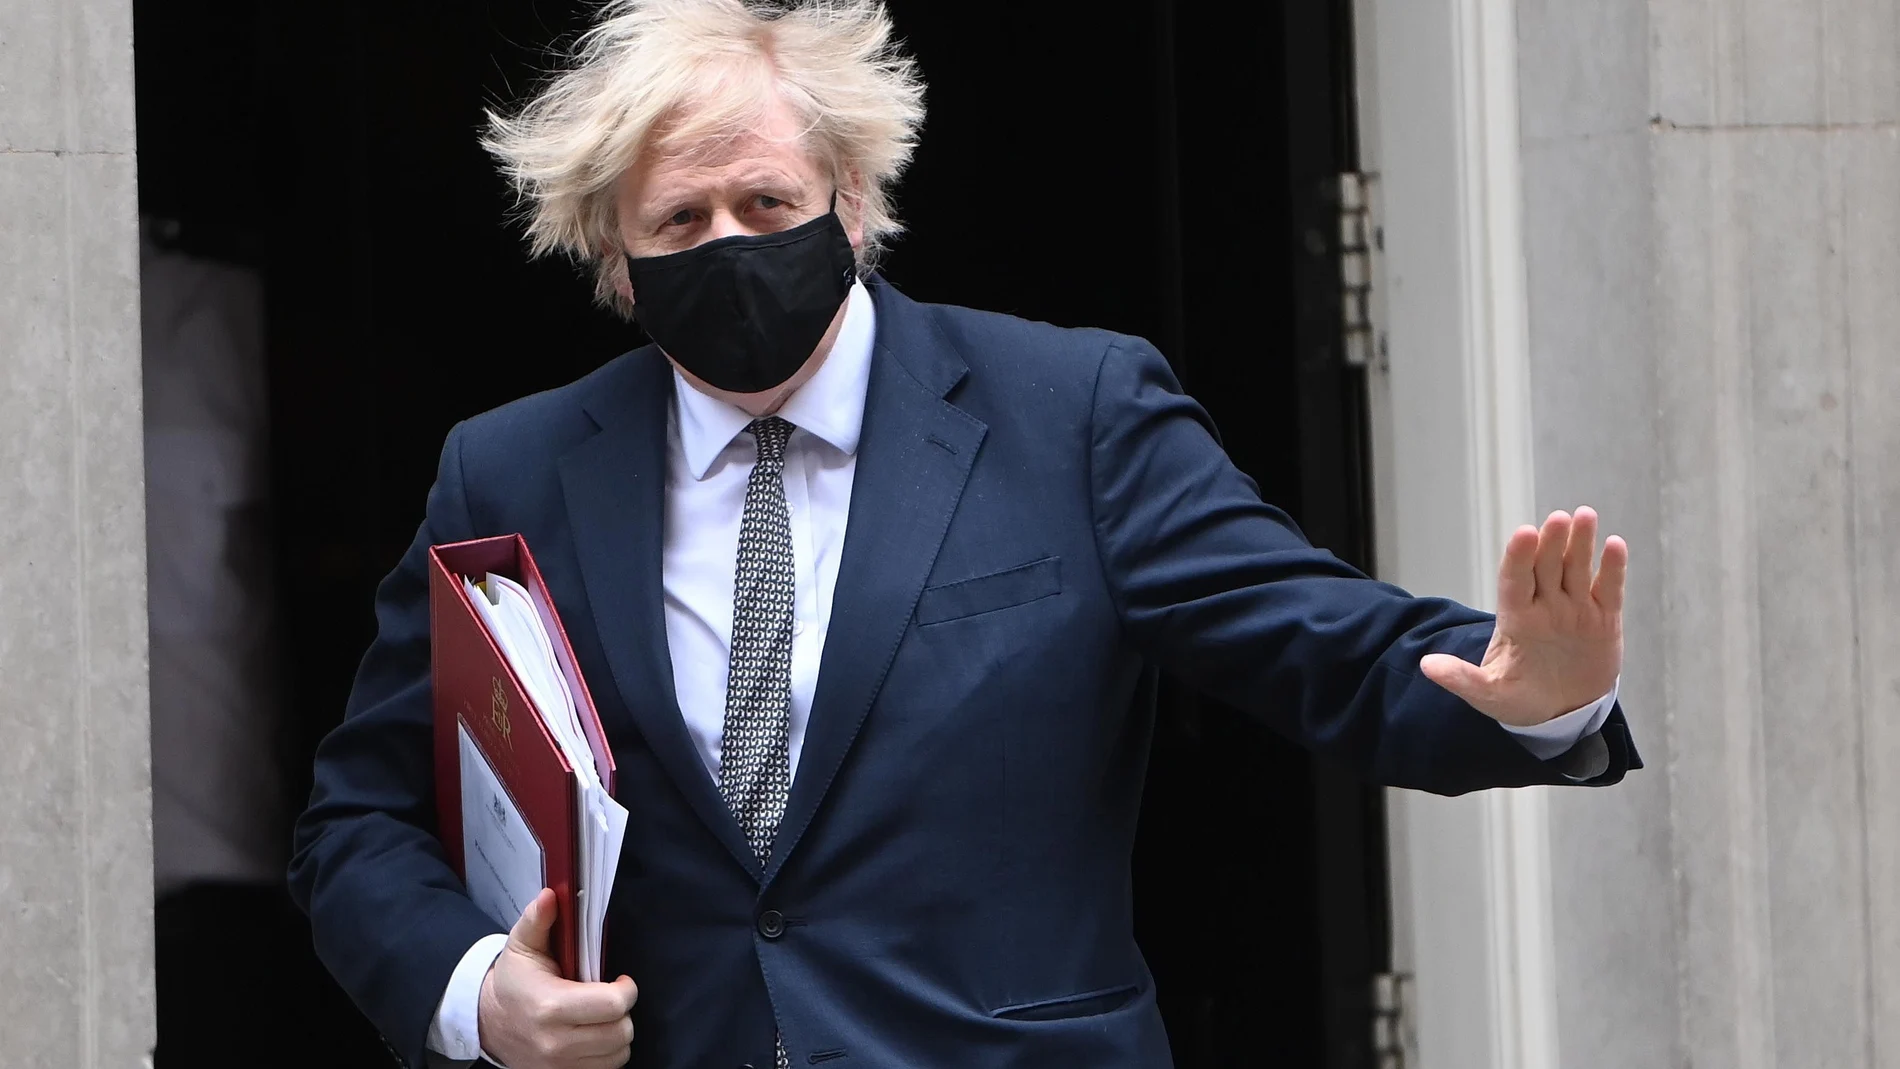 El "premier" británico, Boris Johnson, abandona Downing Street camino del Parlamento